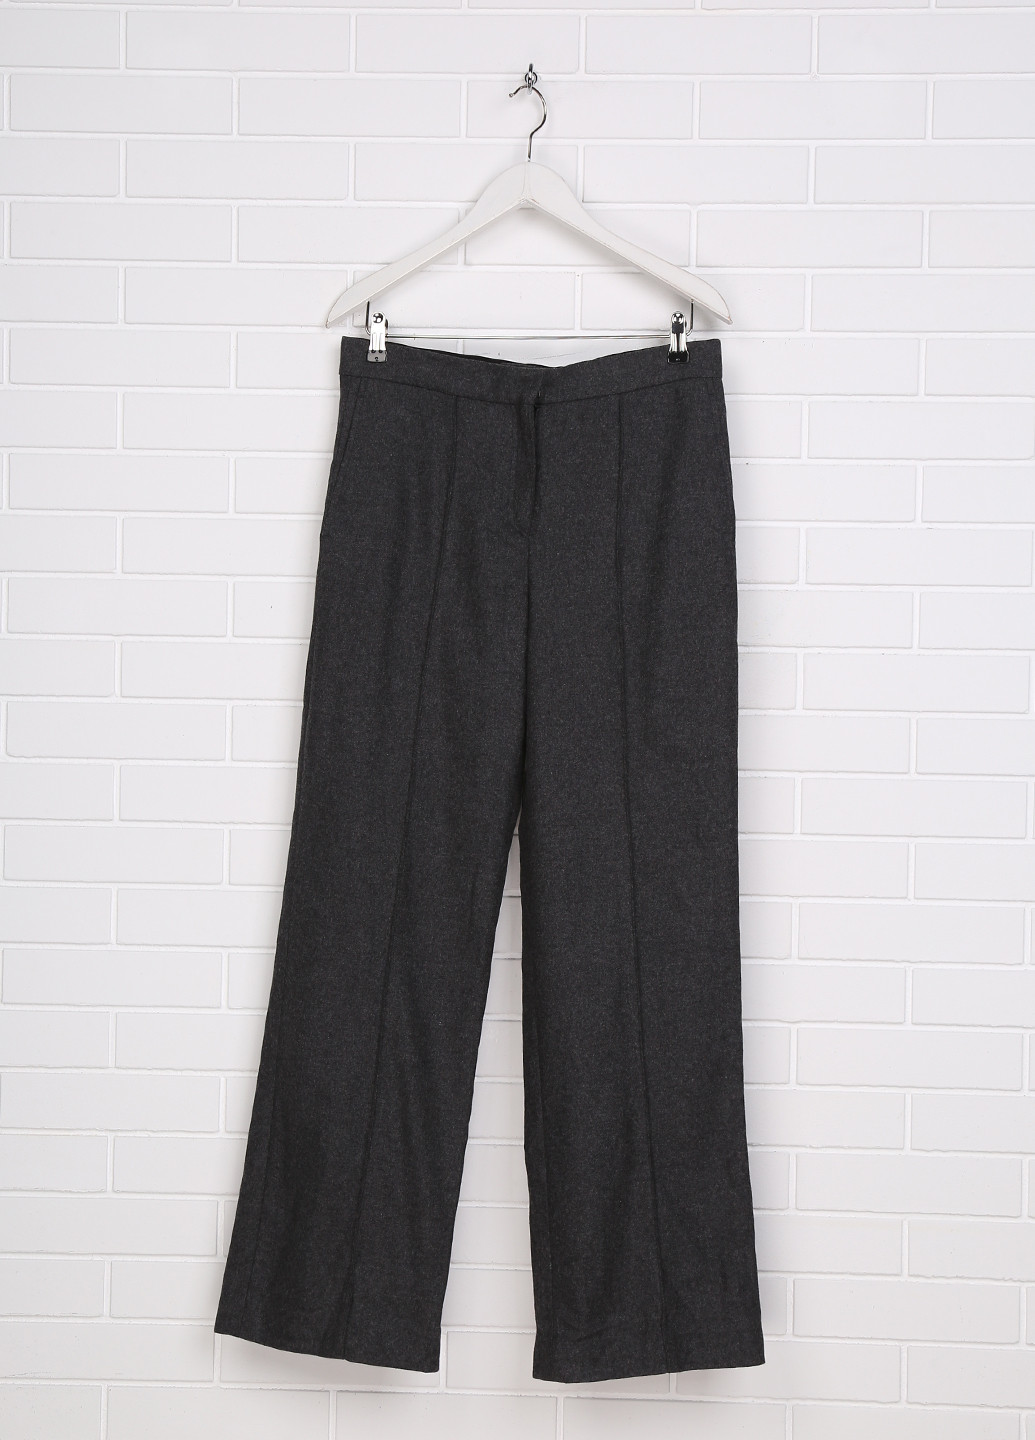 Грифельно-серые классические демисезонные клеш брюки H&M